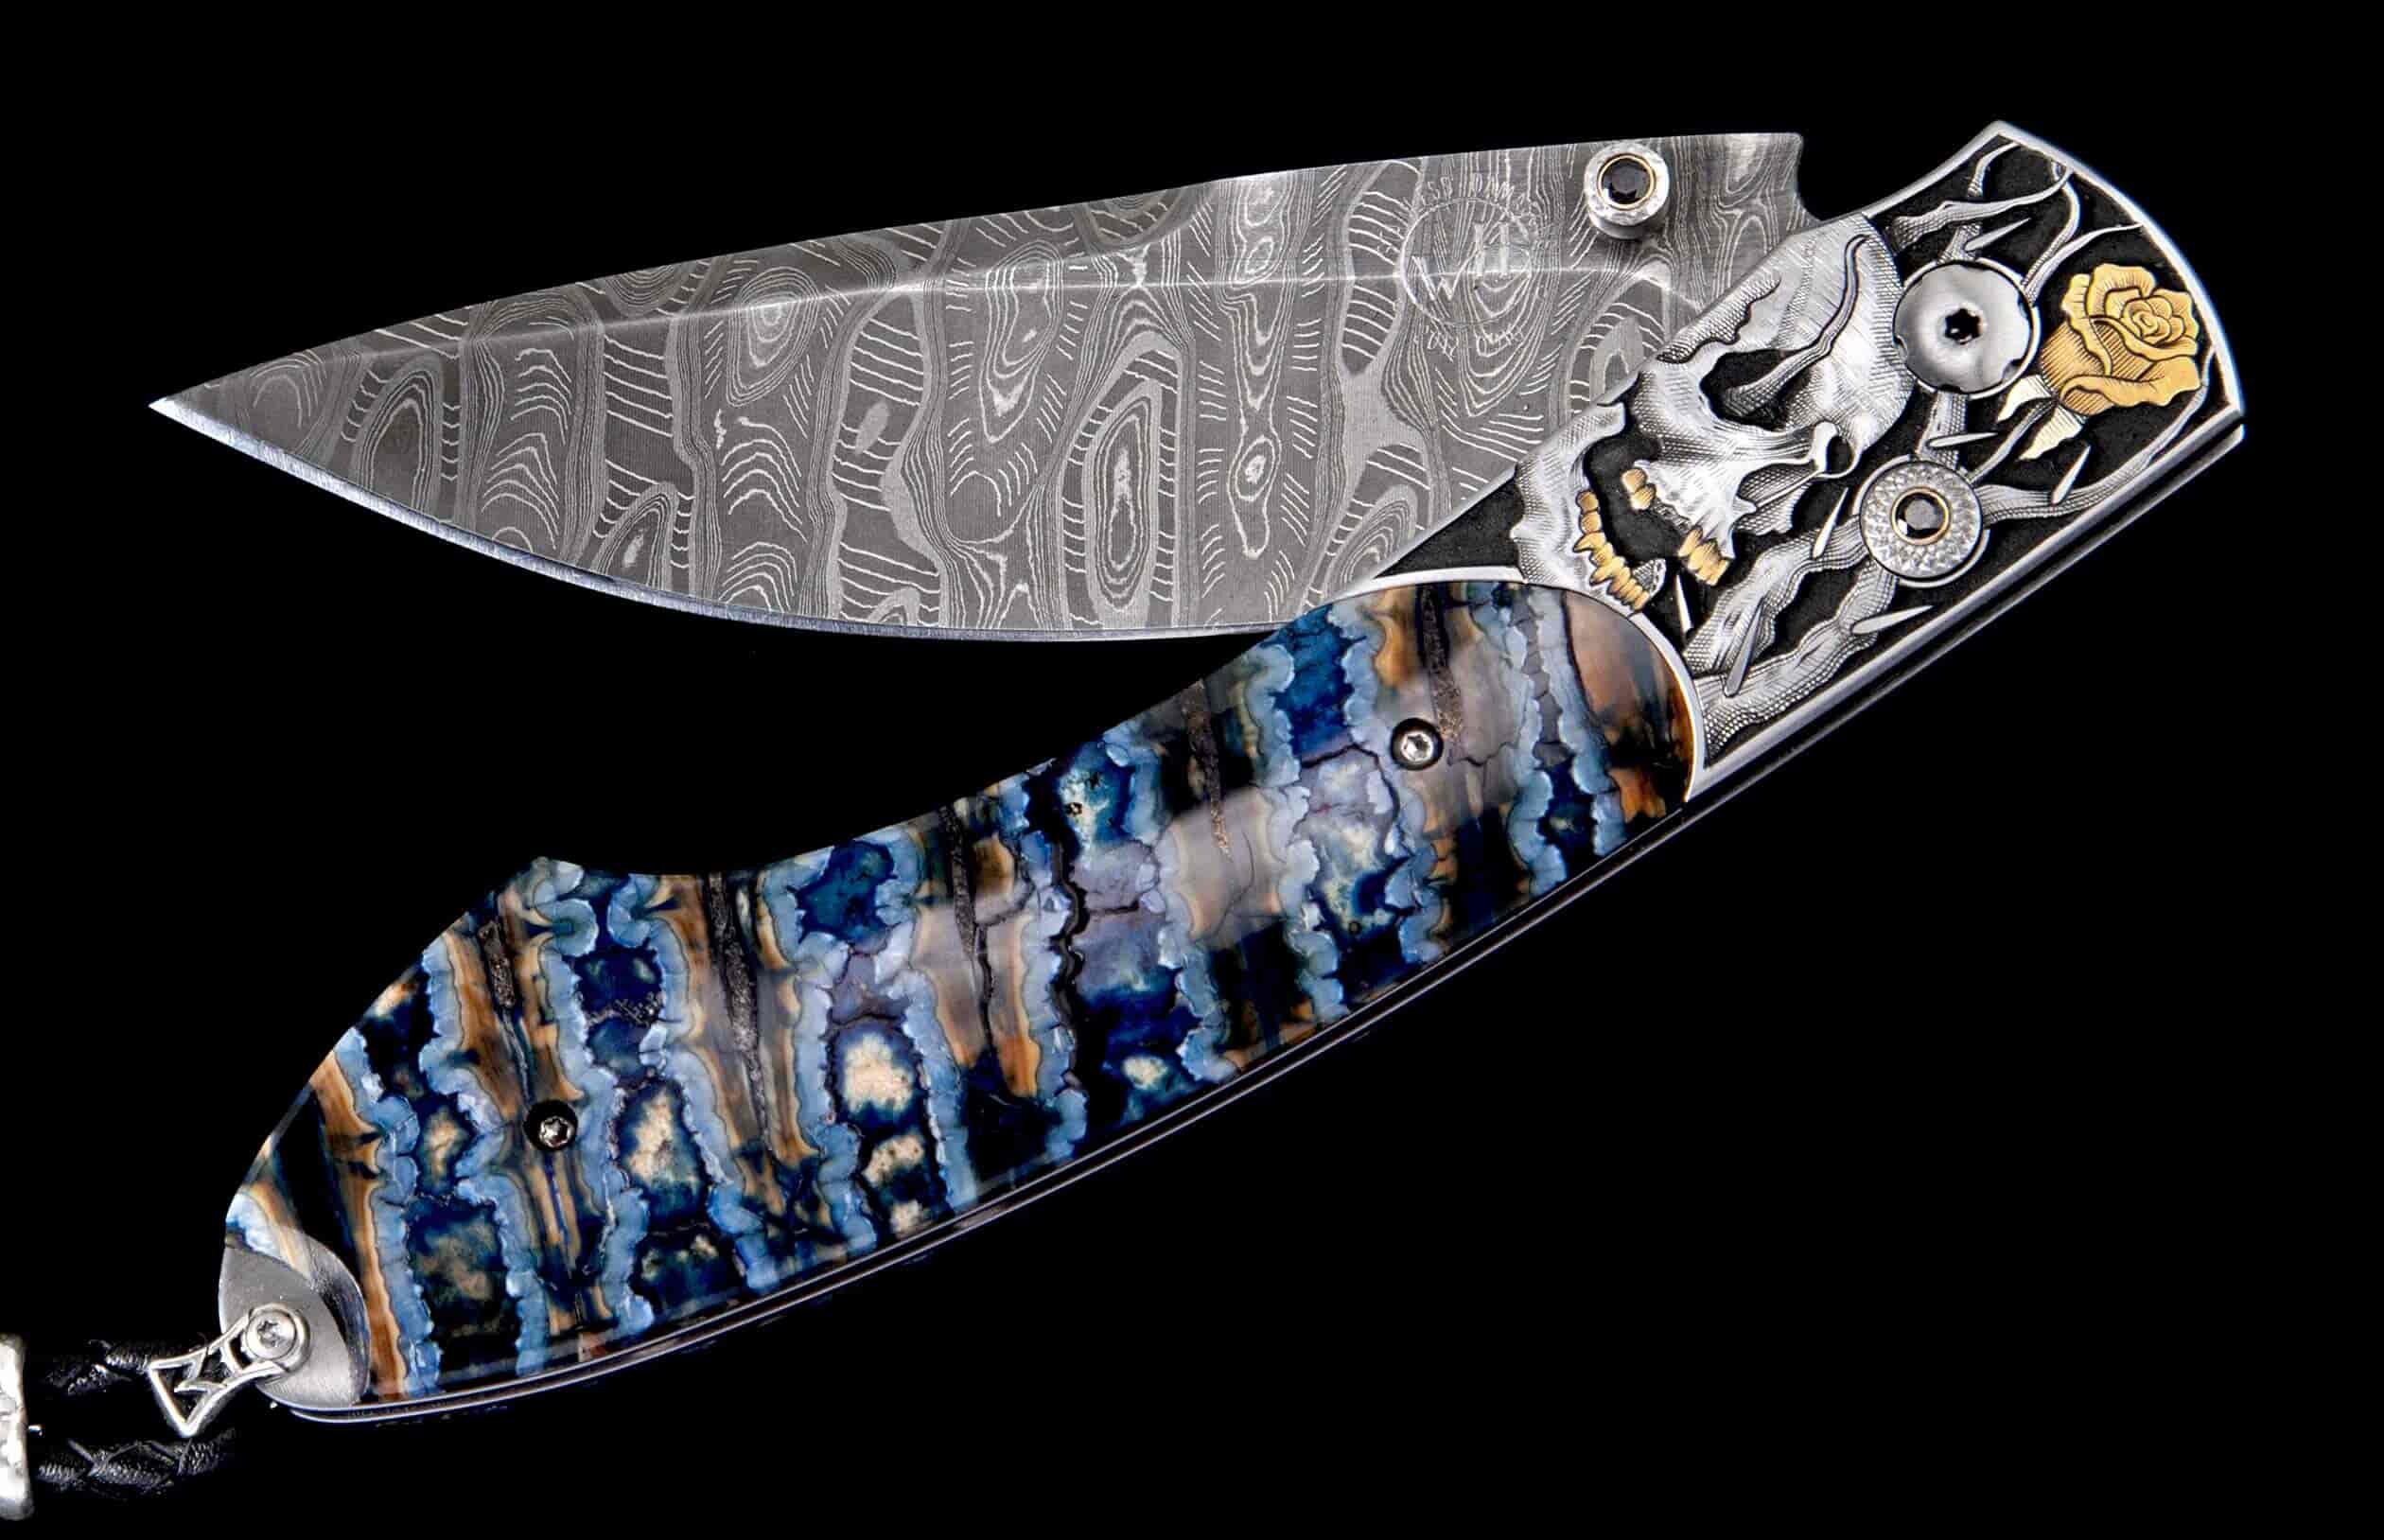 Engraved Skull Knife, Folder Knife, Belt Clip Knife 